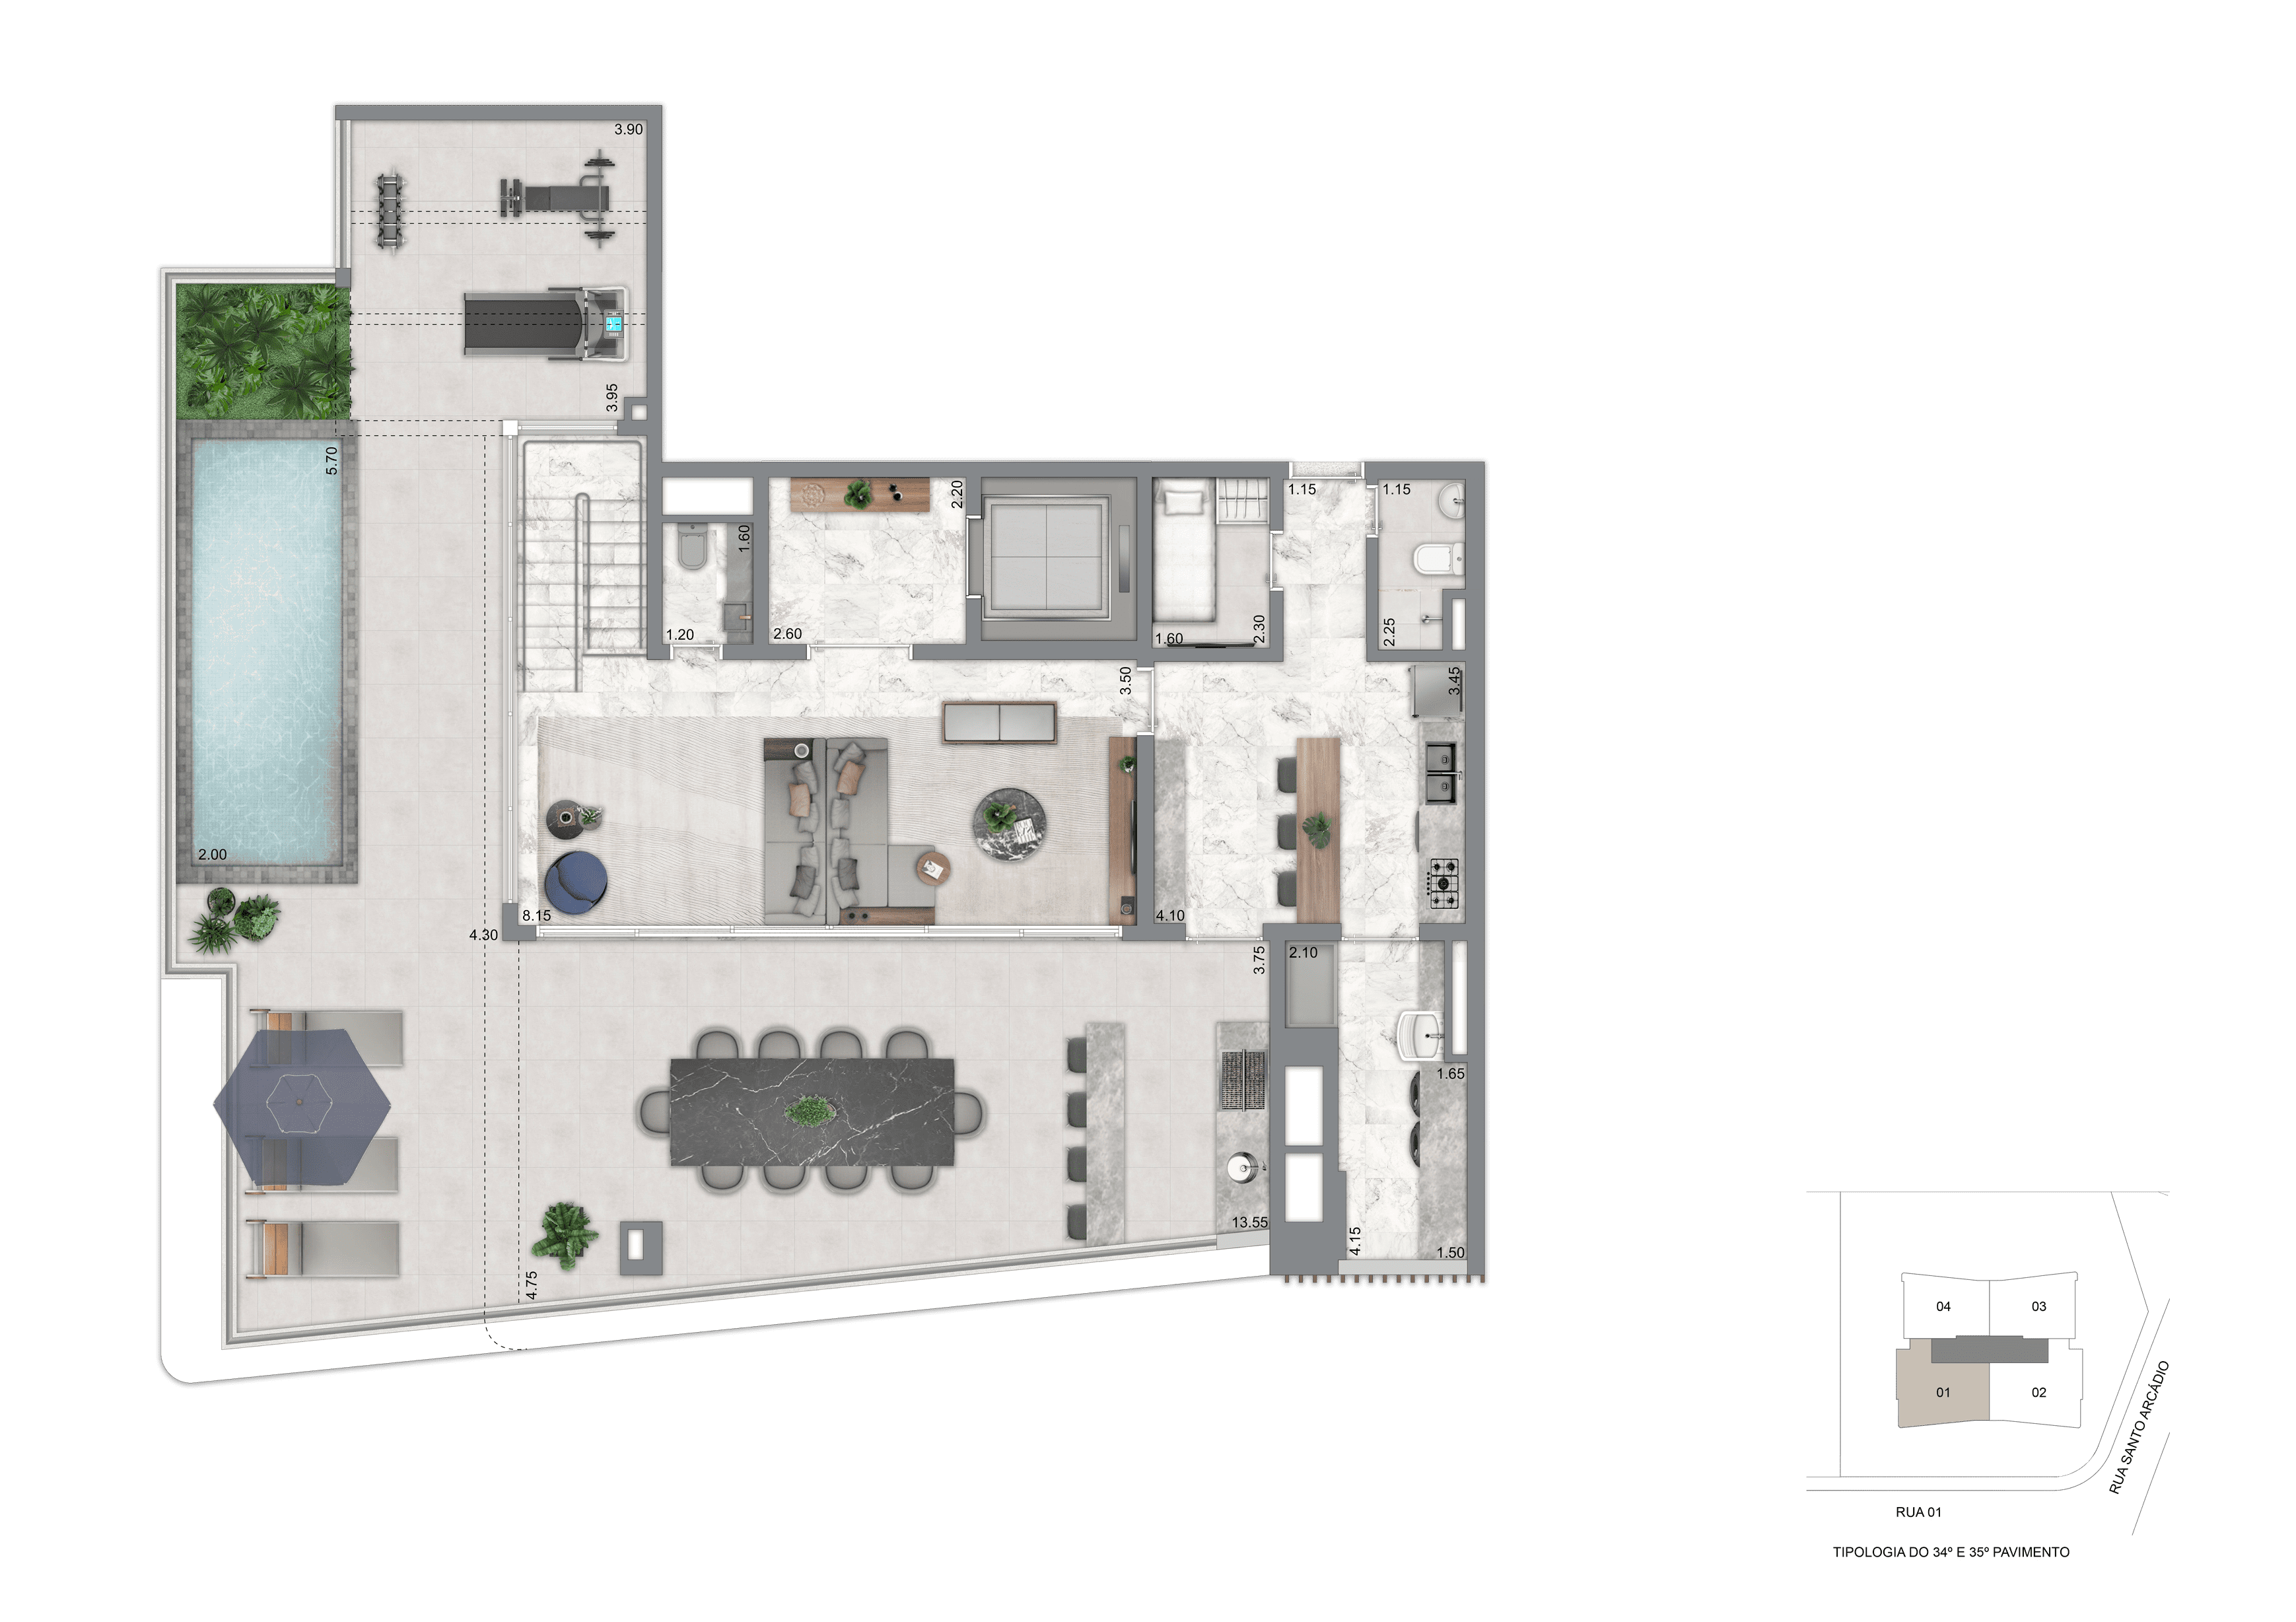 Planta Duplex Superior - 396 m²